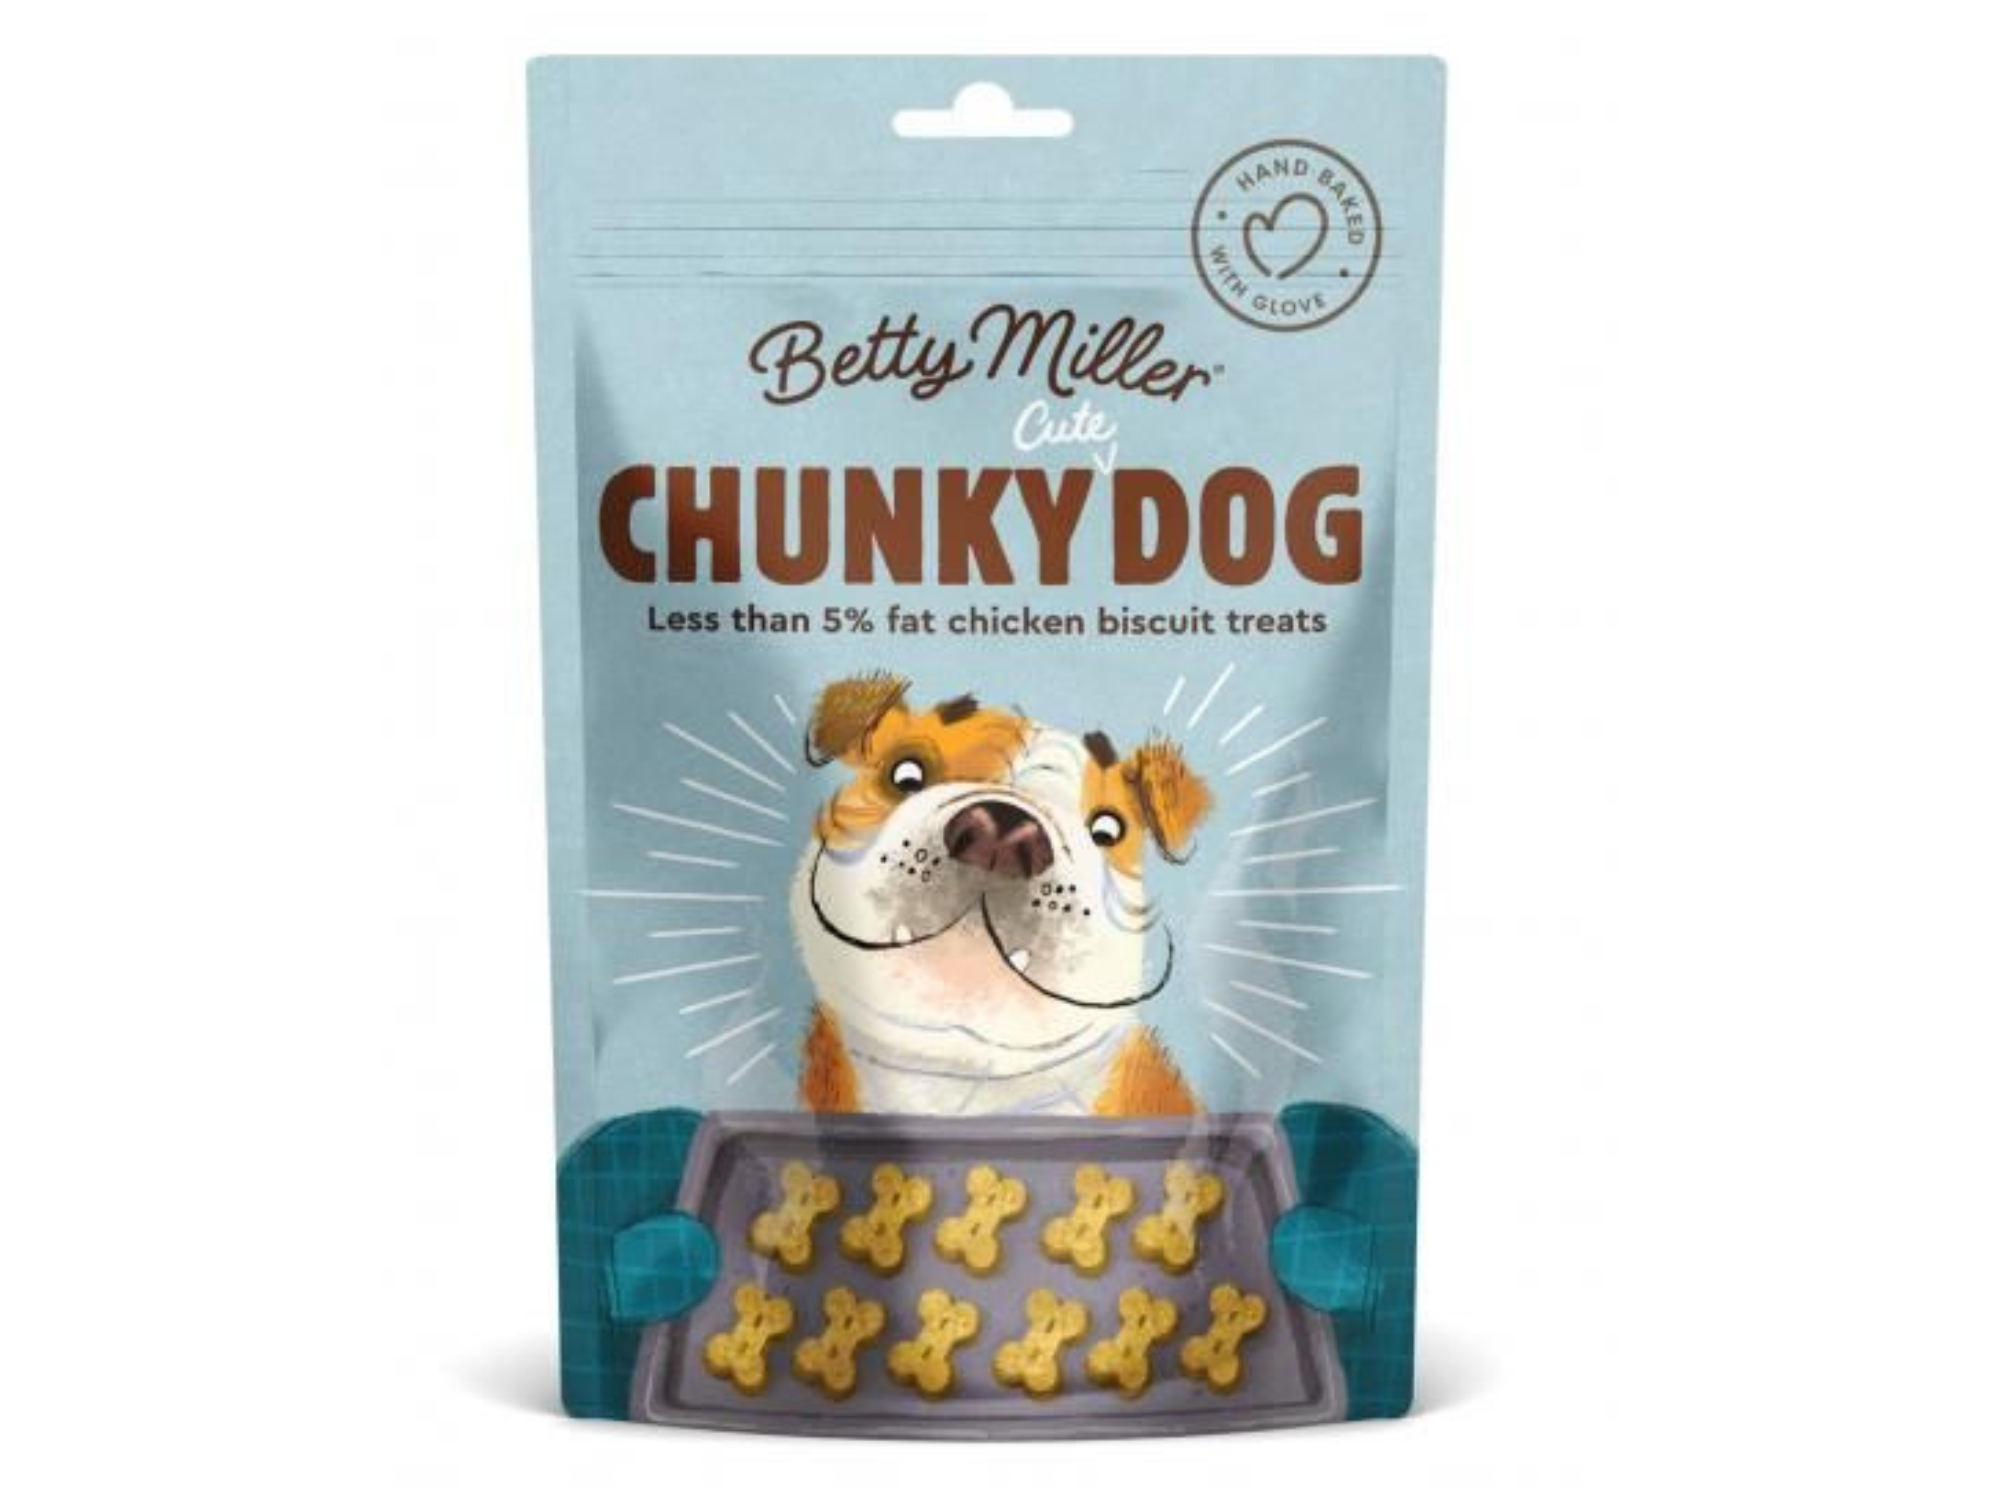 Chunky Dog Baked Treats | Betty Miller